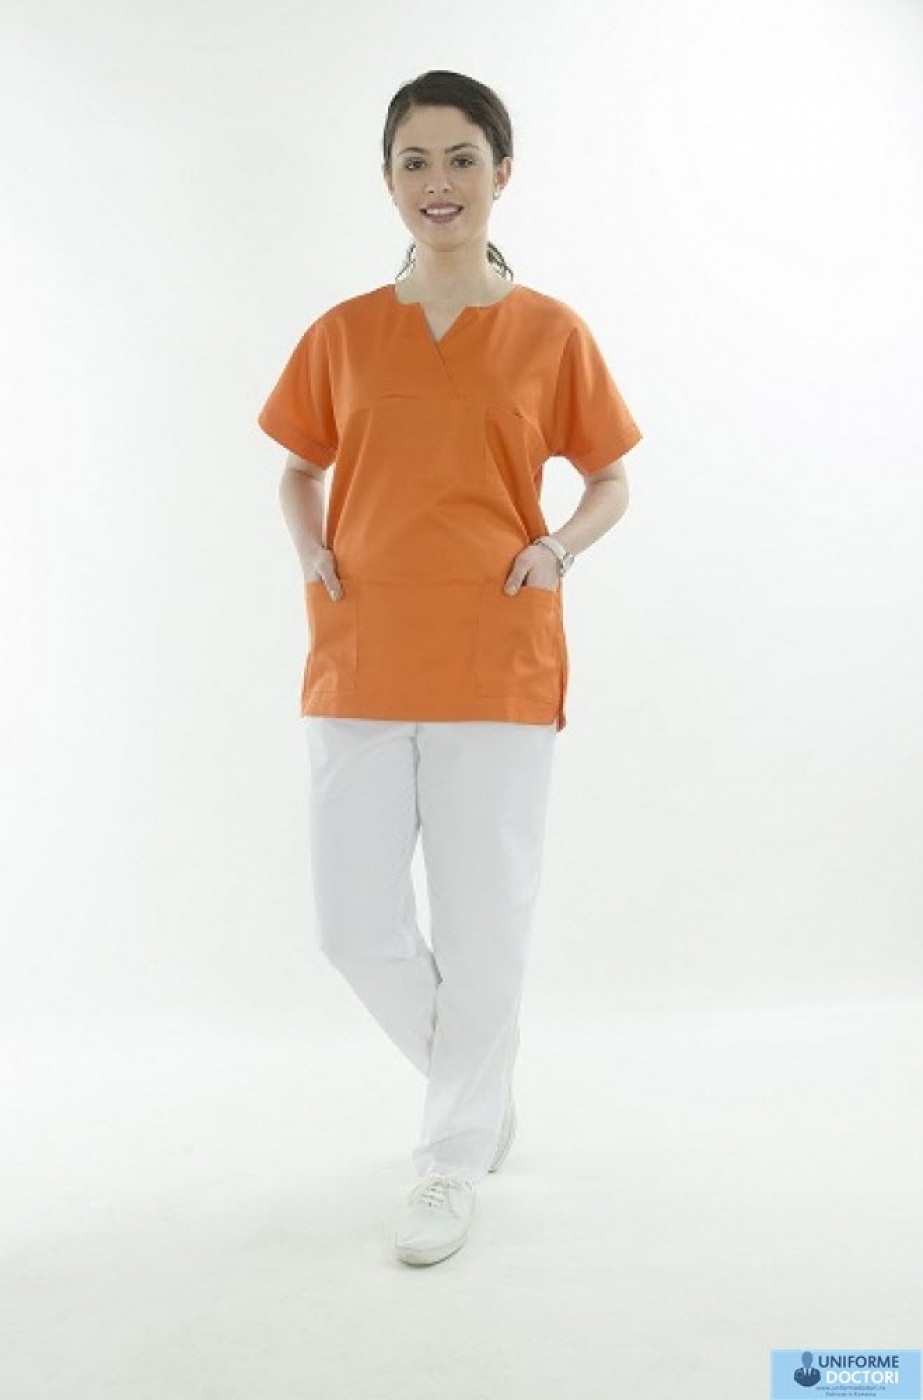 Uniforme medicale – Bluza medicala cu maneca scurta si guler in achior